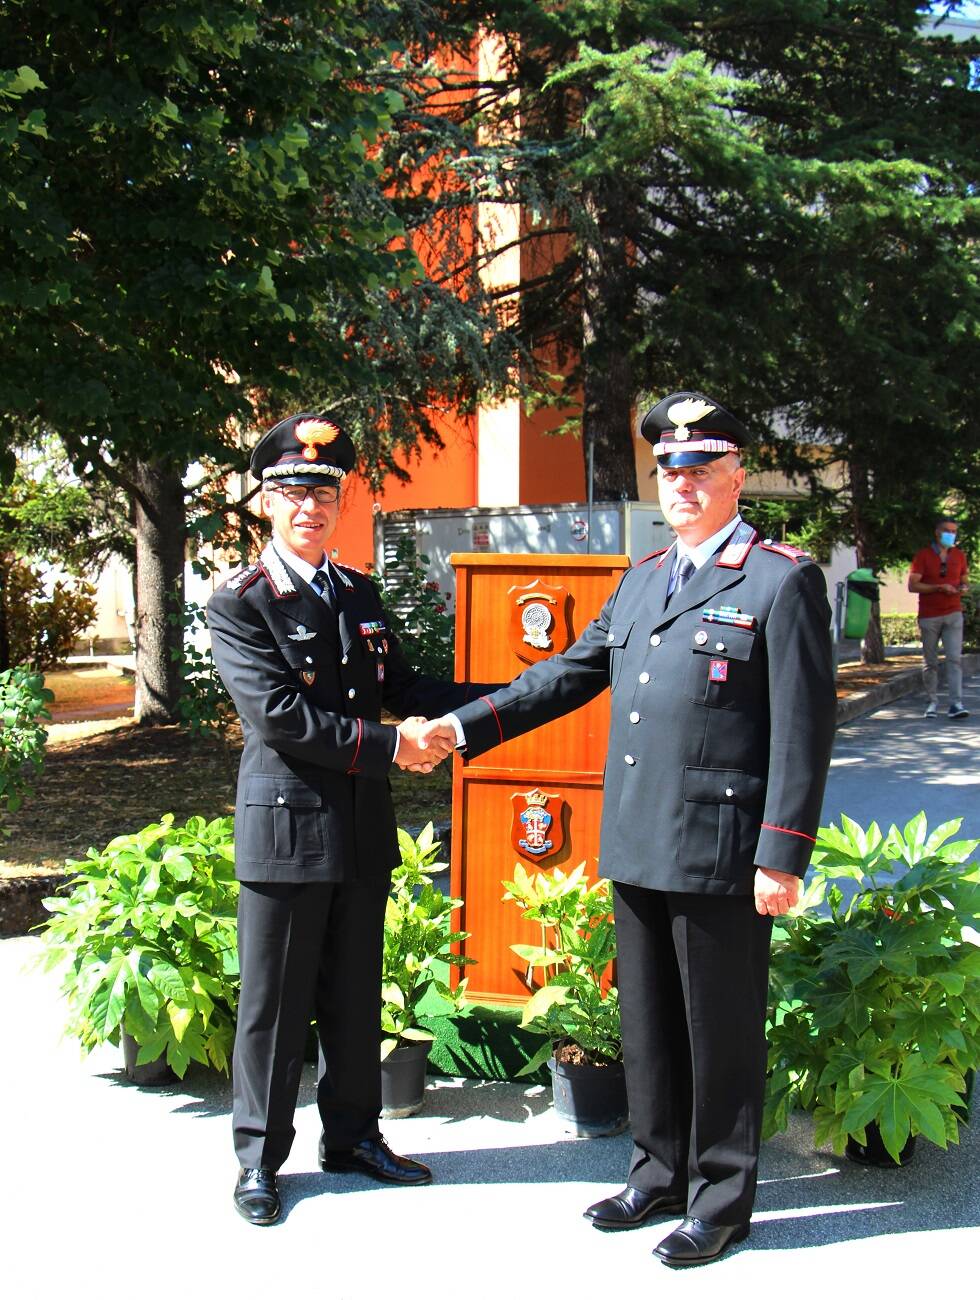 Petrocco carabinieri 